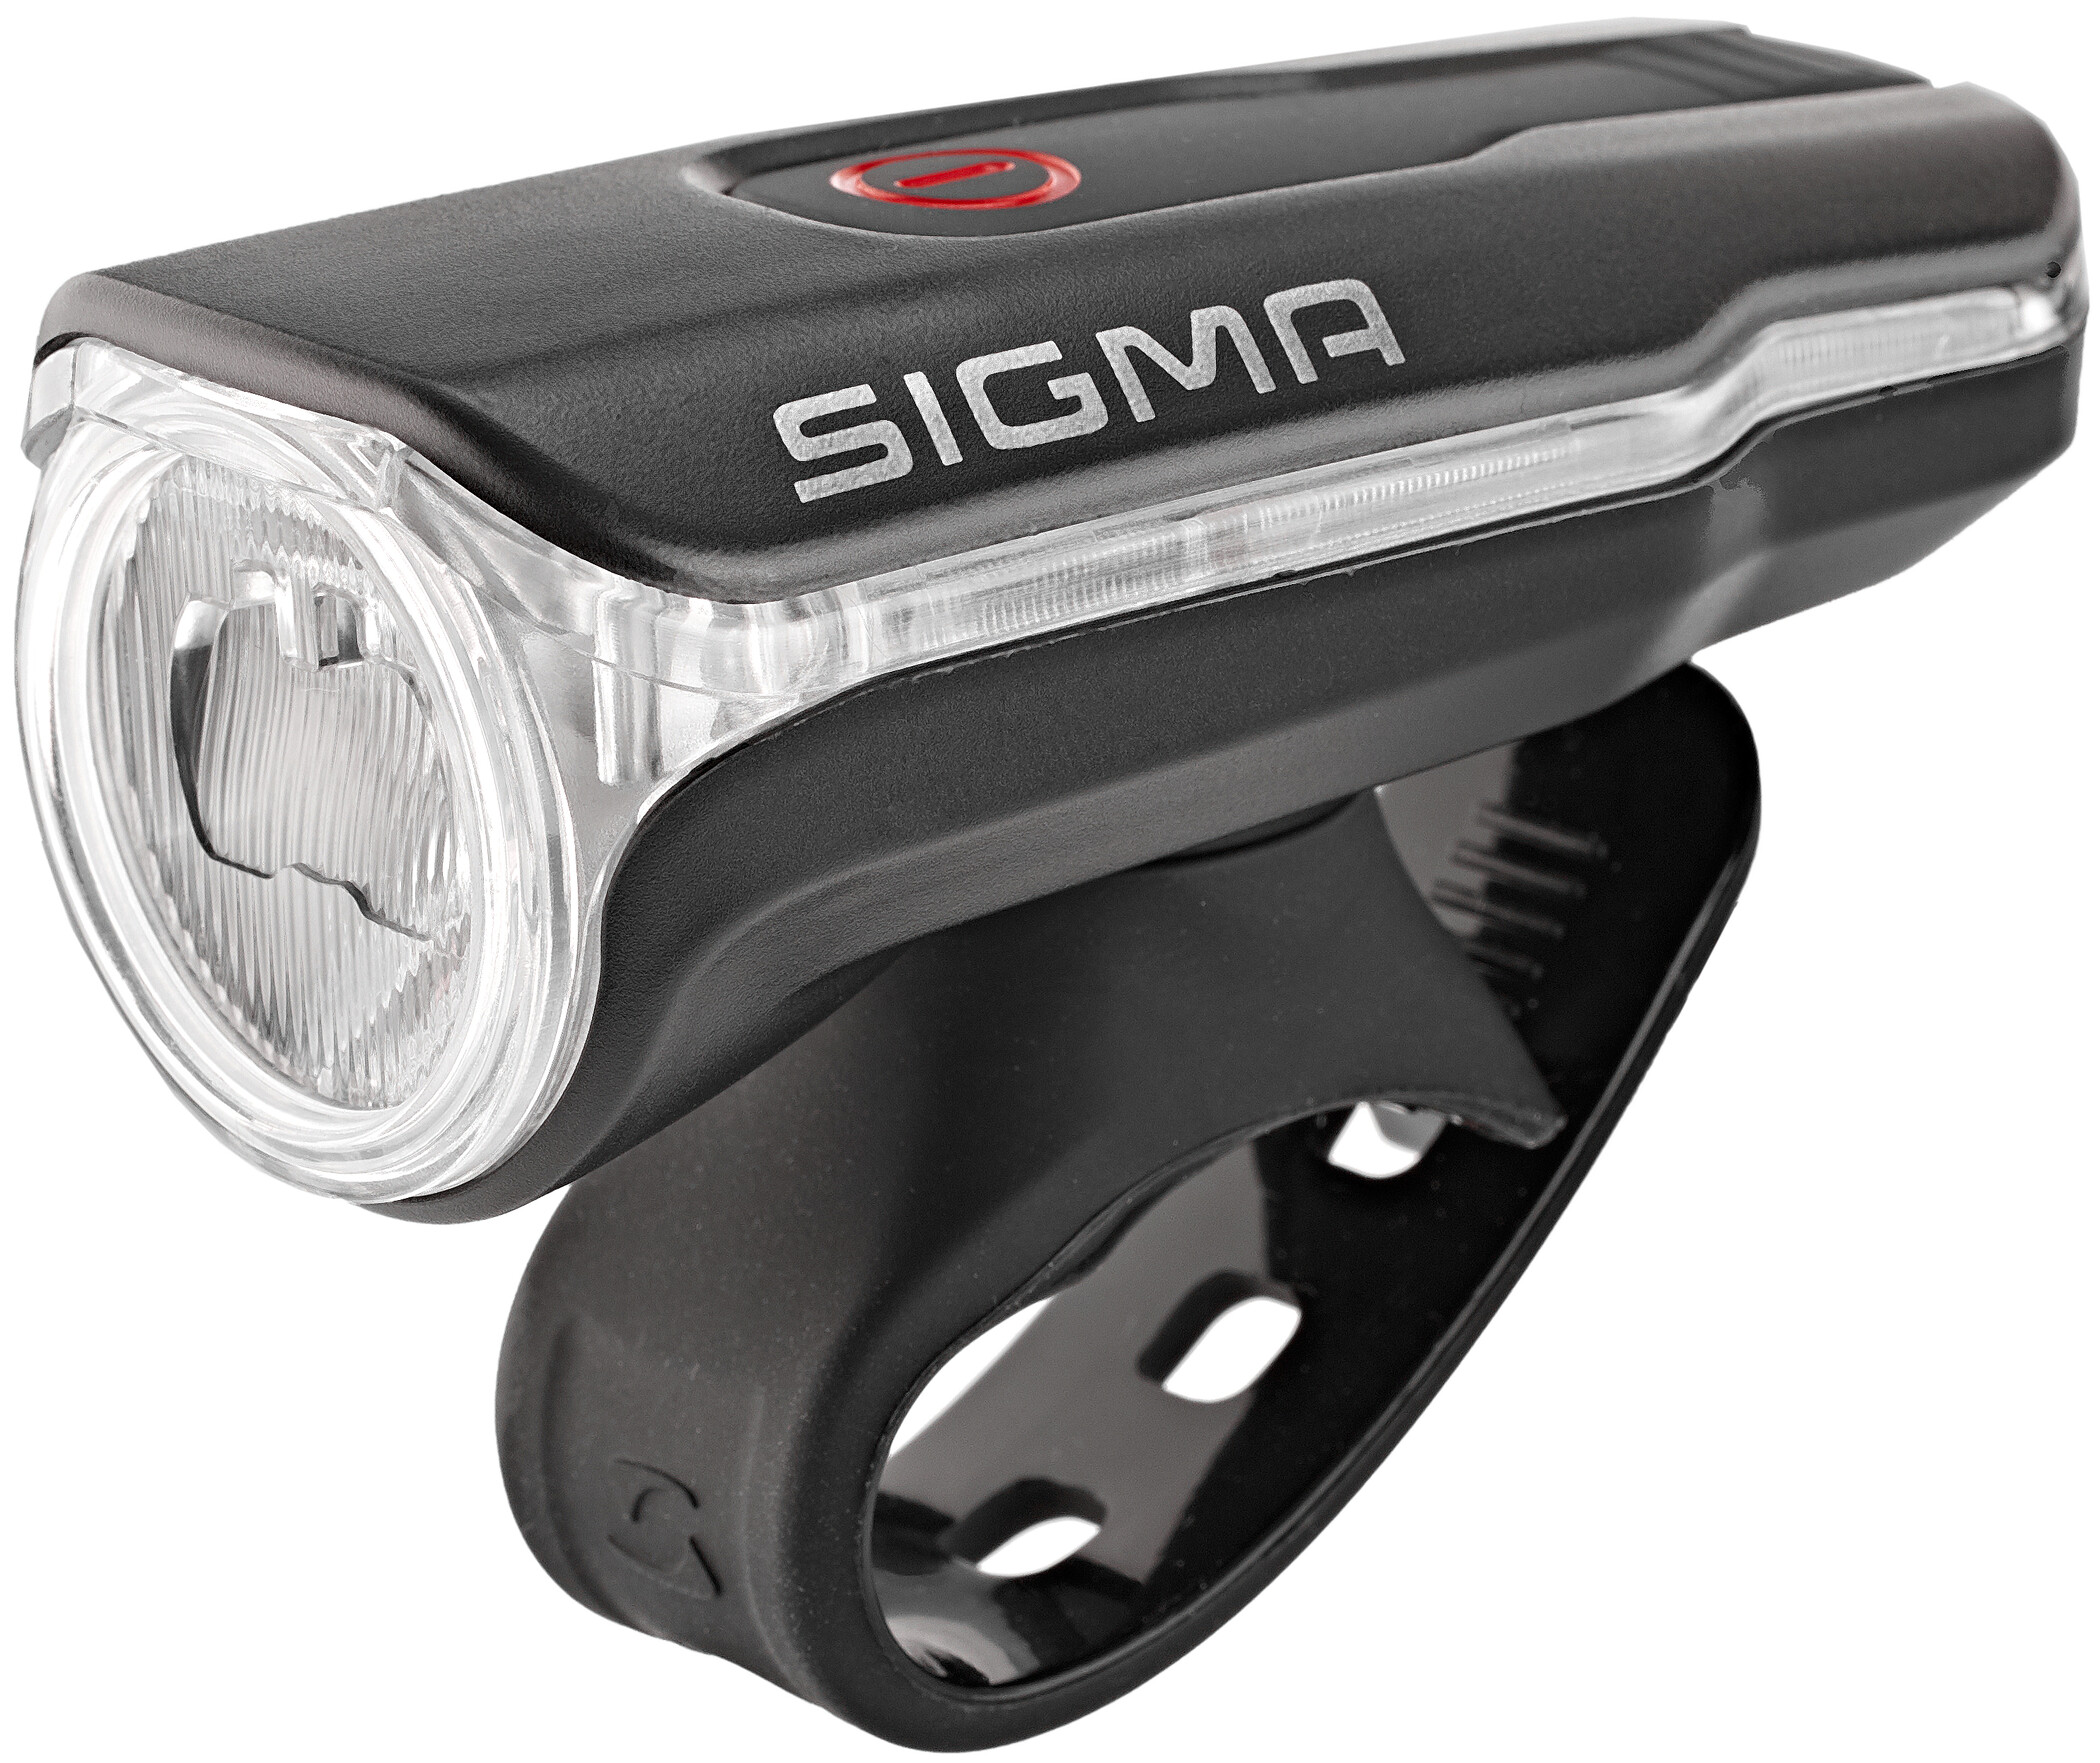 Sigma Sport Beleuchtung Mono Hl Stirnlampe Schwarz 7.4 x 12 x 6 cm